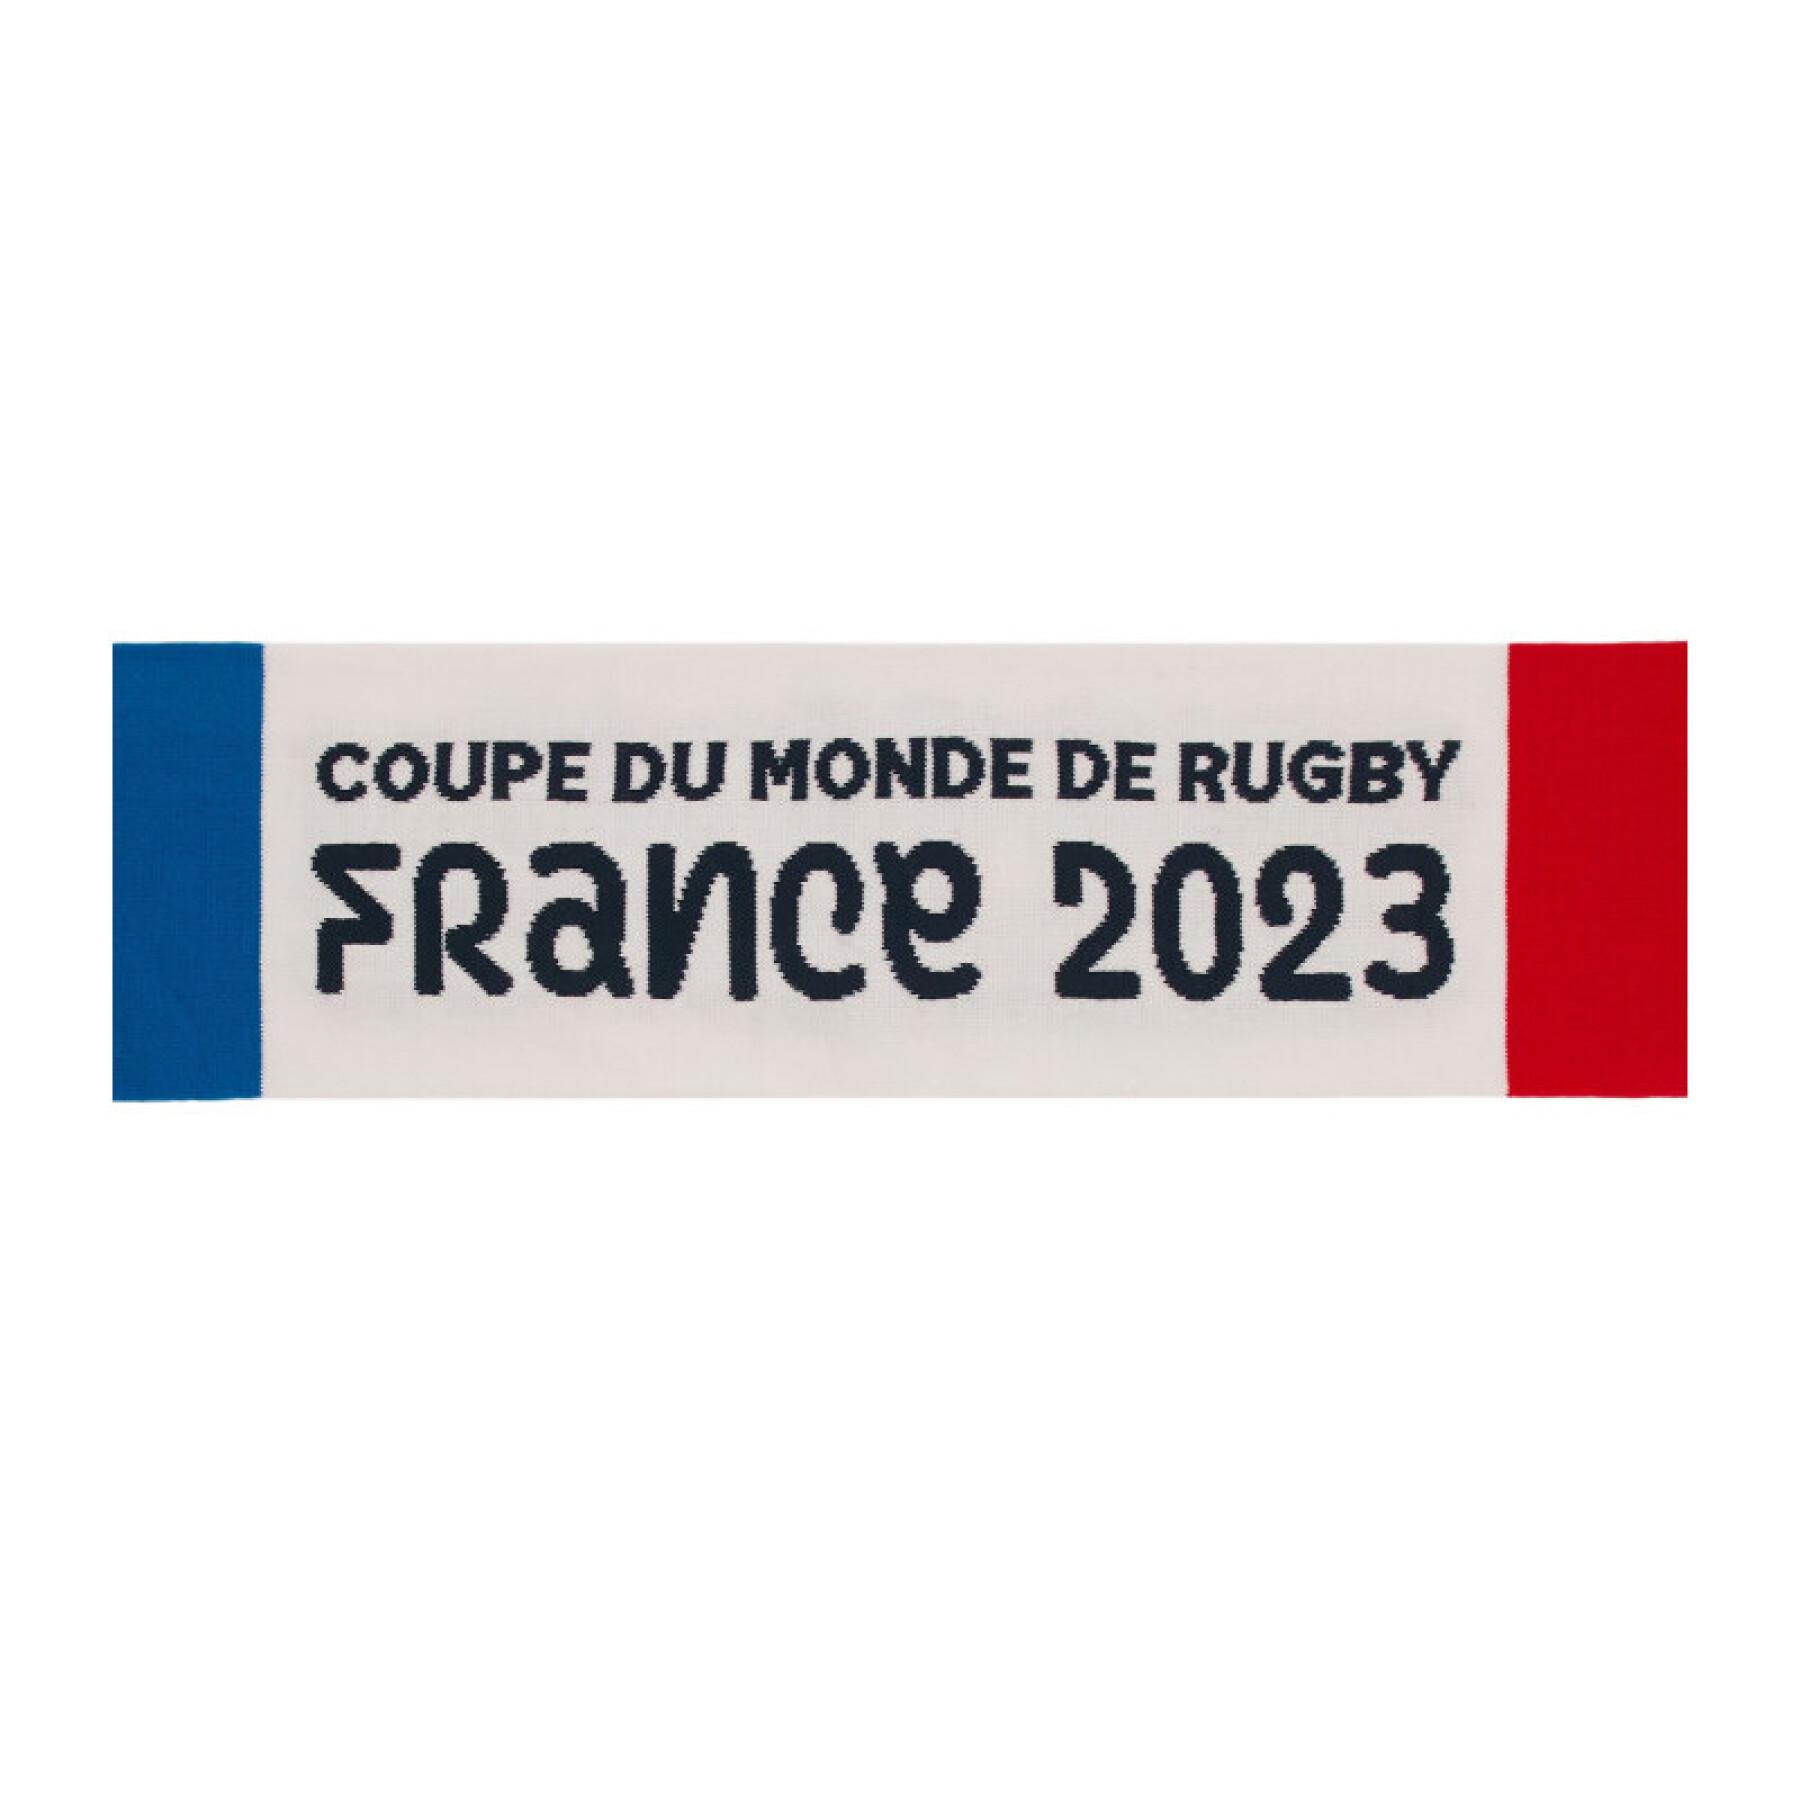 Rugby Wereldkampioenschap 2023 sjaal France